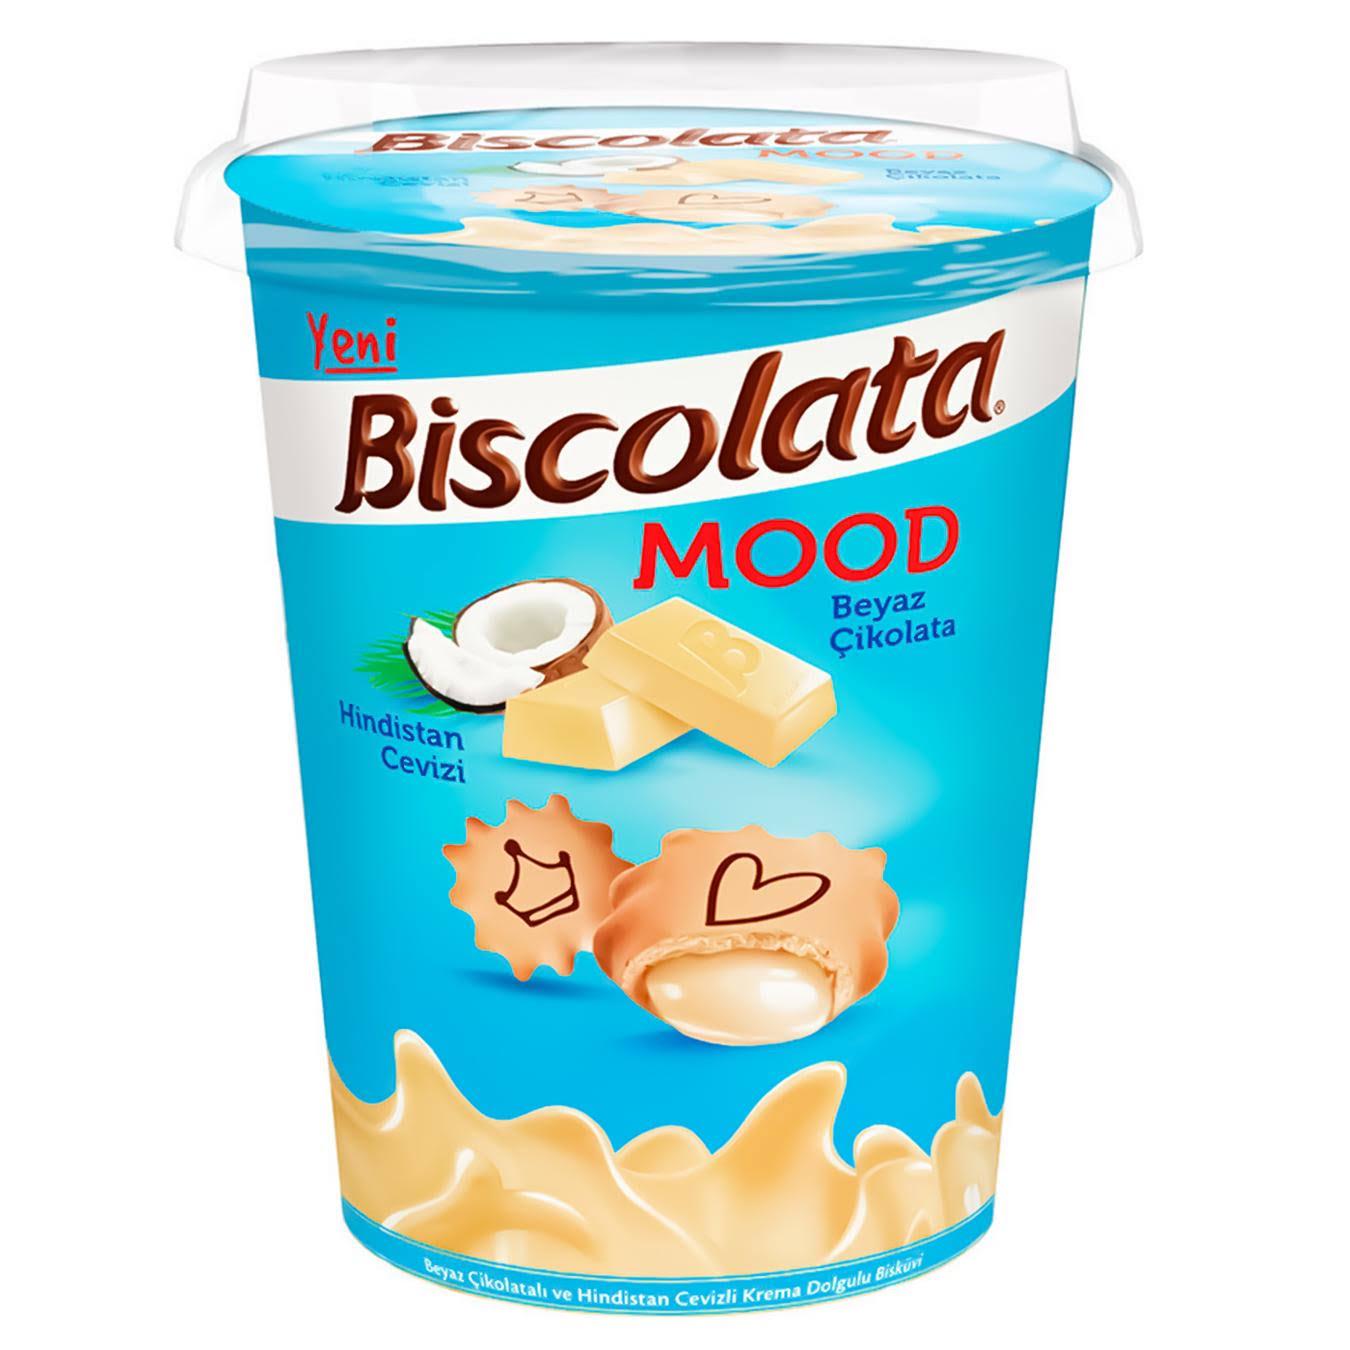 Печенье Biscolata Mood Coconut с кремовой начинкой из белого шоколада и кокоса 115 г